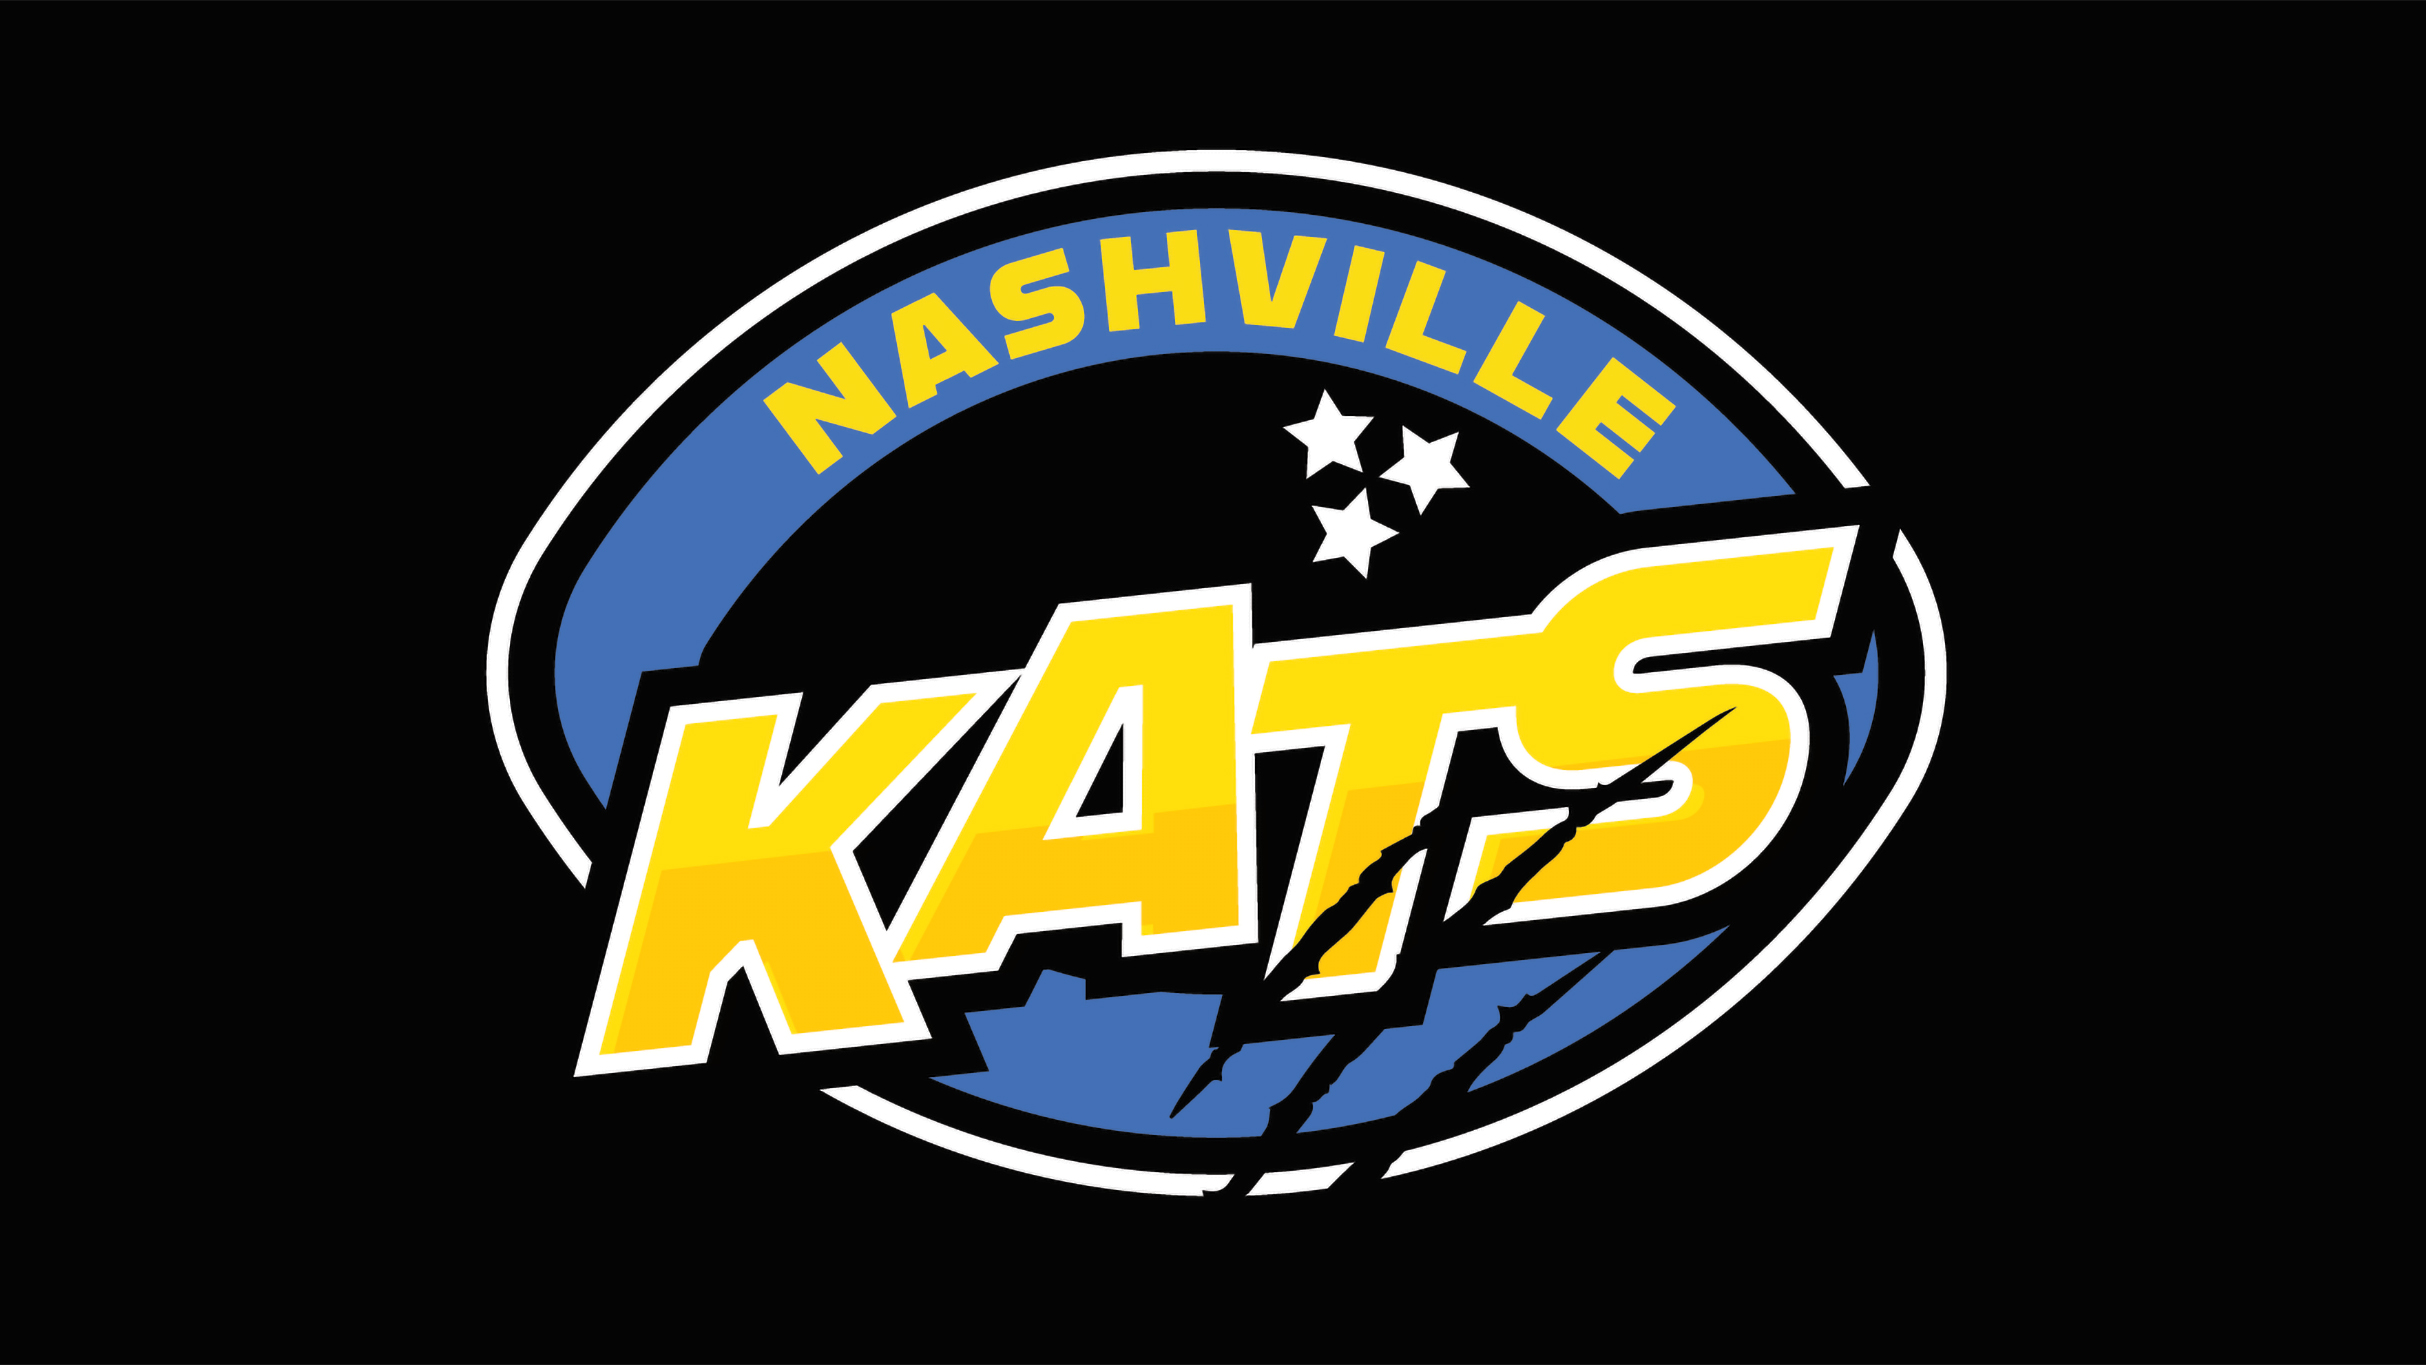 Nashville Kats vs. Wichita Regulators